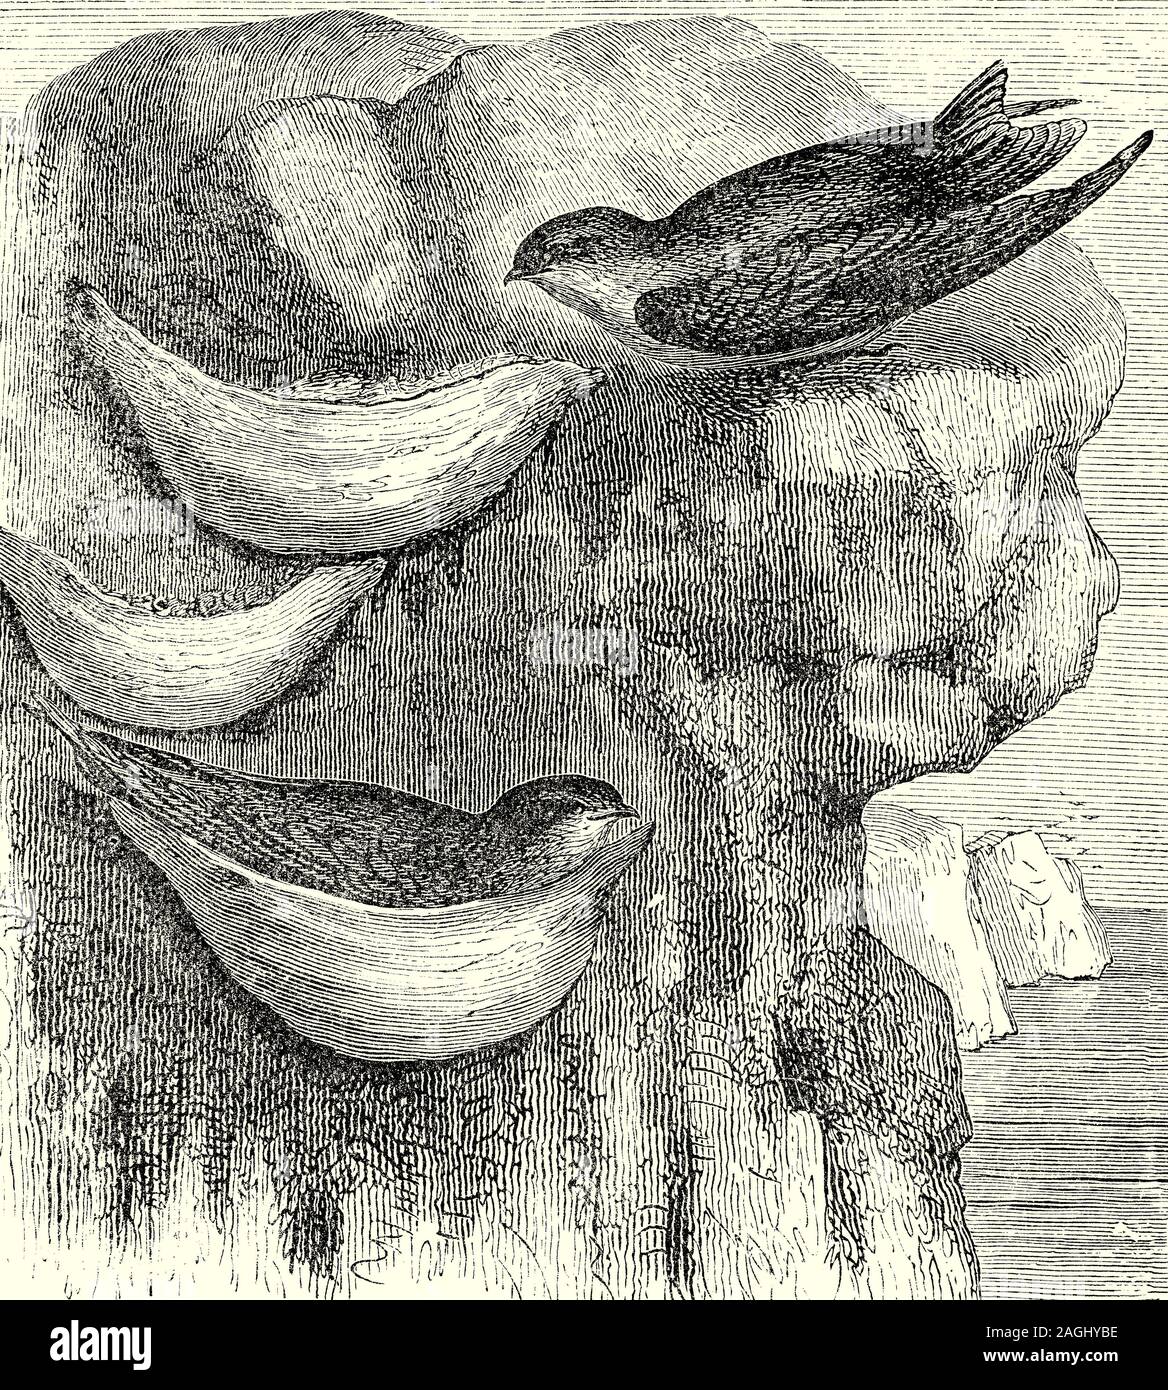 Ornithologie: Zucht und Nester: Die ESSBAREN-nest Swiftlet (Aerodramus fuciphagus), auch bekannt als der "Weiße-nest Swiftlet, ist ein kleiner Vogel der SWIFT-Produktfamilie, die in Süd-Ost Asien. Eine koloniale Nester, sein Nest, vollständig aus dem Gewinde der ihren Speichel gebaut, in den hohen, dunklen Ecken an Höhlenwände, verwendet, ist der berühmte chinesische Delikatesse zu machen, Bird's Nest Suppe. Sie sind Insektenfresser und in der Regel ihre wohnhöhle während des Tages verlassen, um Futter und zurück in der Nacht zu schlafen. Männchen und Weibchen sehen ähnlich aus, sind monogam und beide Partner beteiligen sich an der Pflege der Nestlinge. Stockfoto